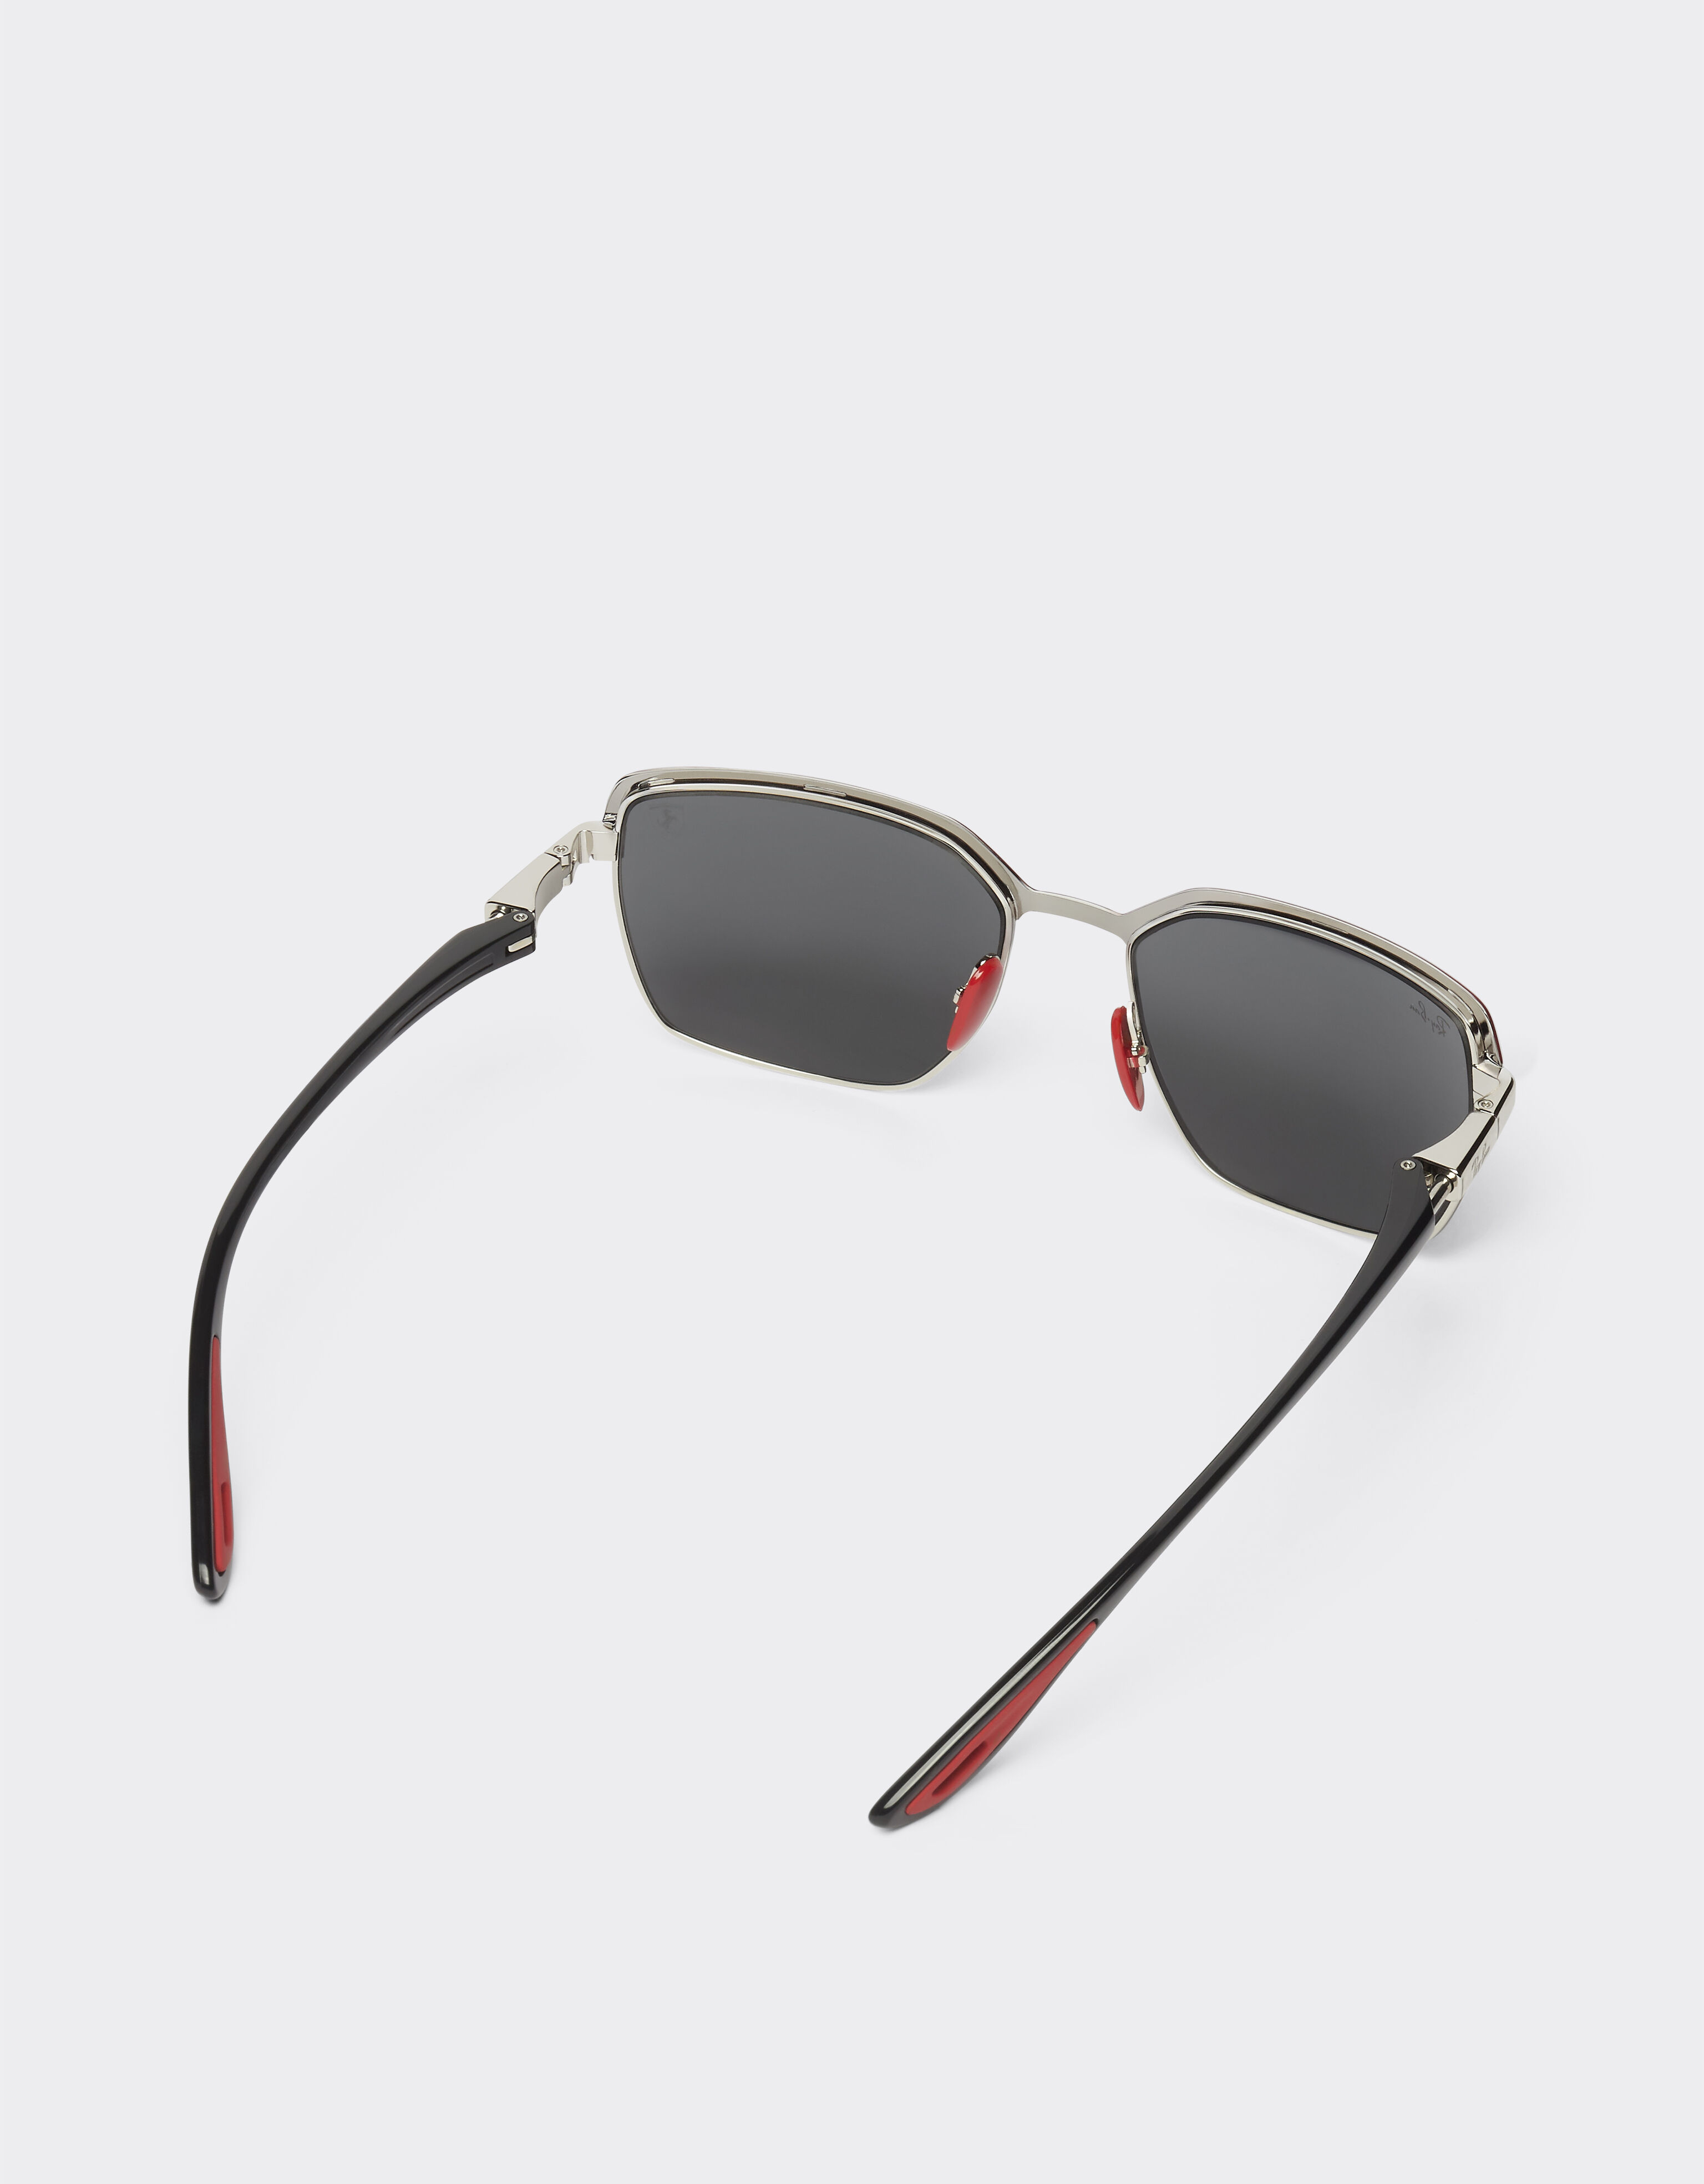 Ferrari Ray-Ban für Scuderia Ferrari Sonnenbrille 0RB3743M aus mattrotem und metallgrauem Metall mit grauen Gläsern Dunkelgrau F1302f